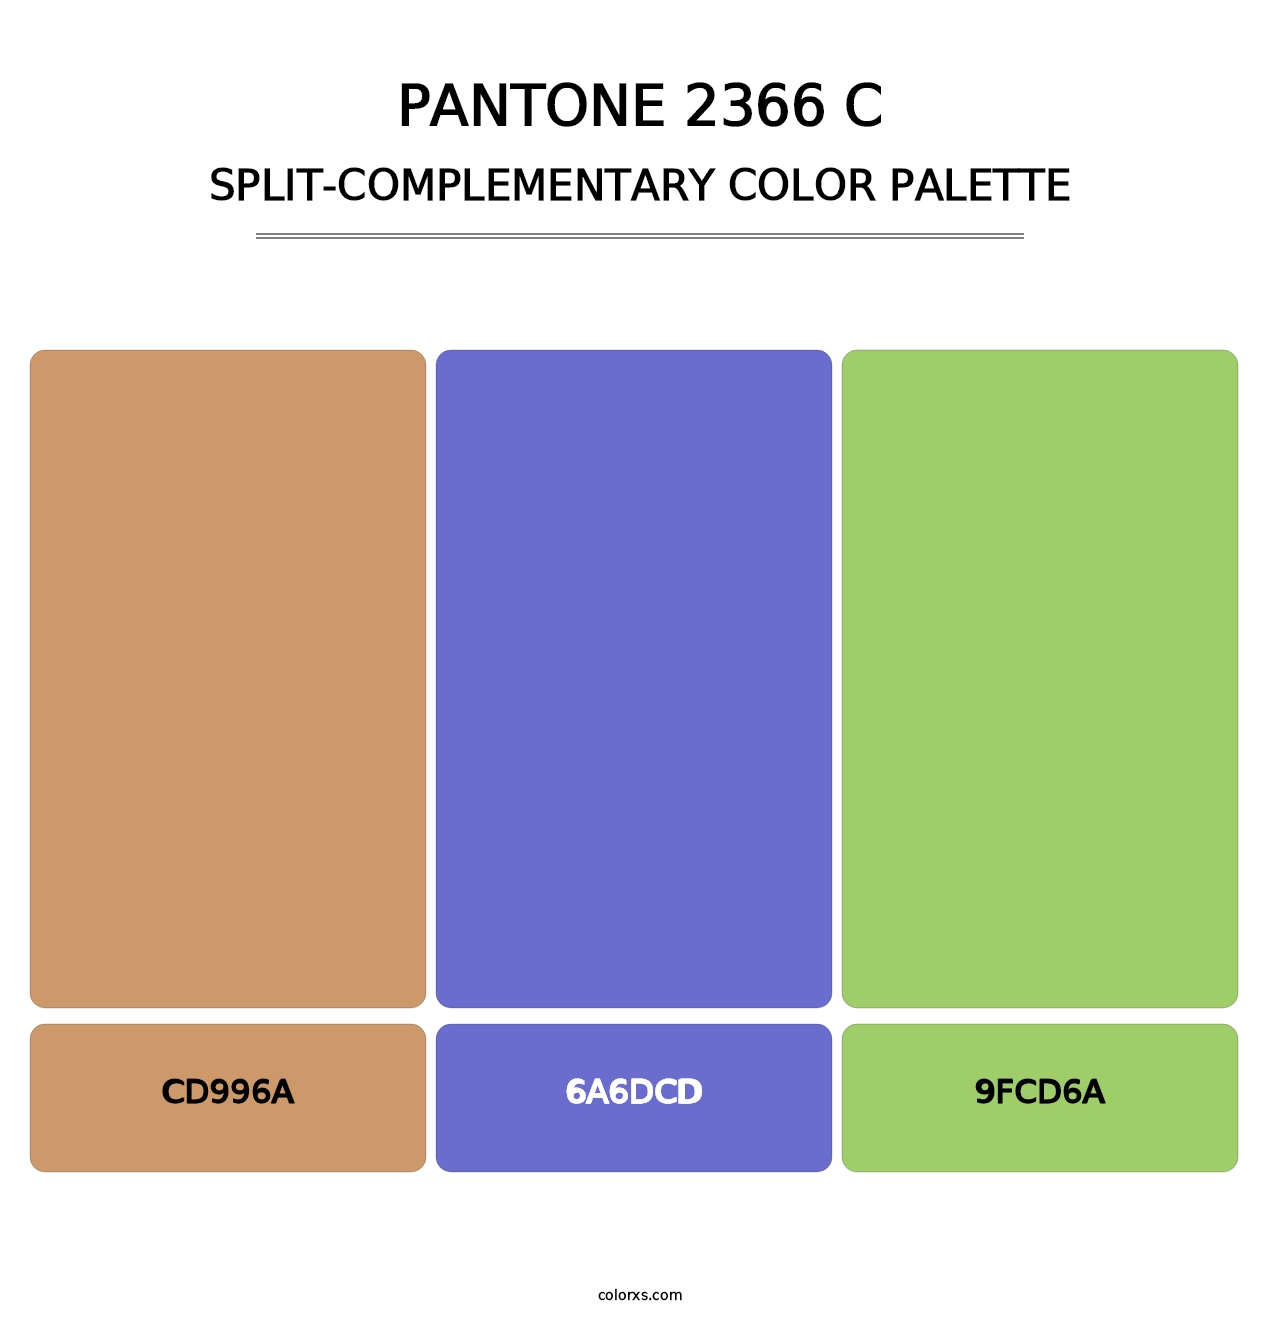 PANTONE 2366 C - Split-Complementary Color Palette